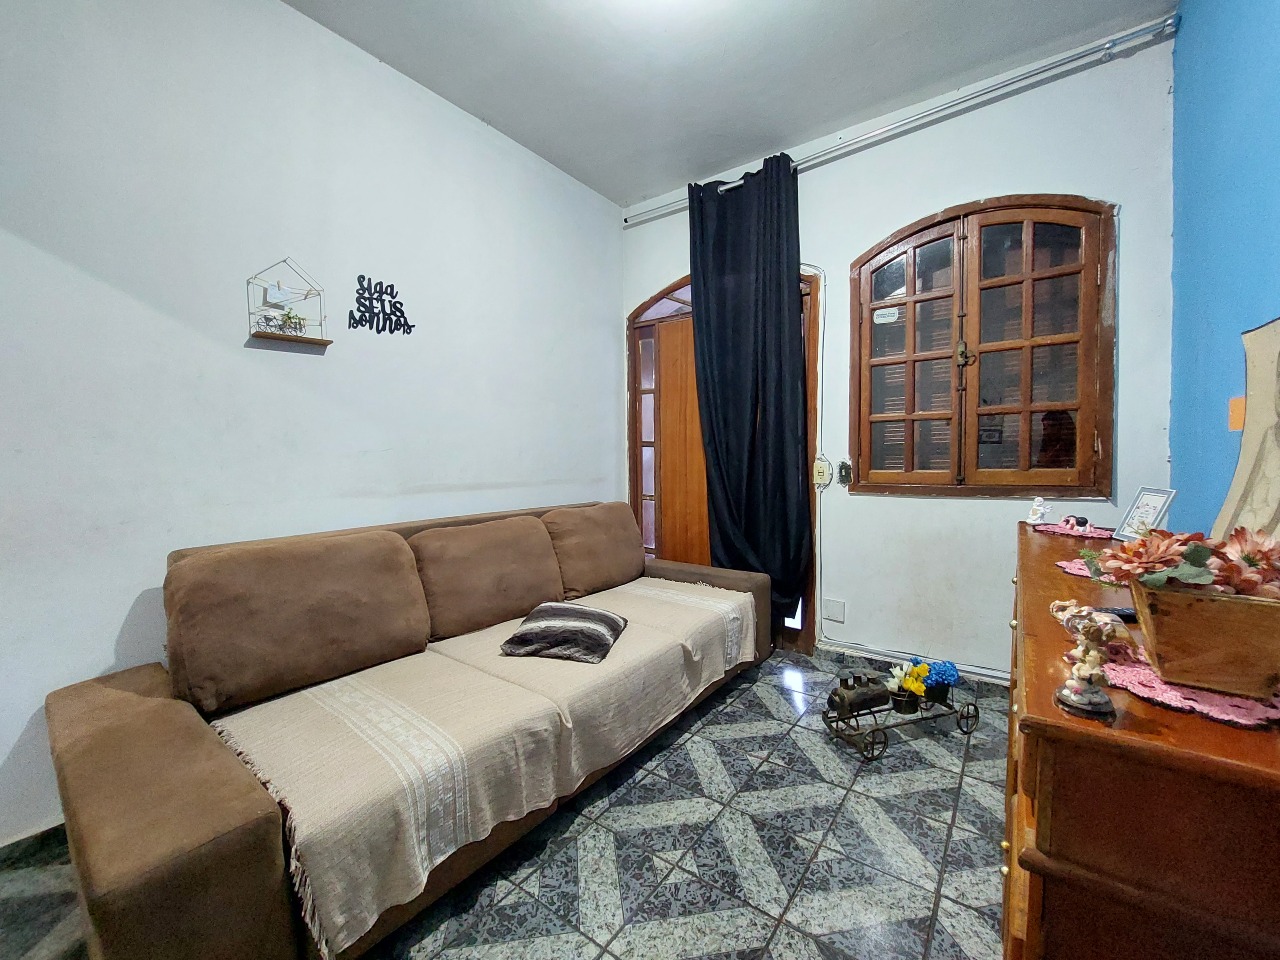 Casa à venda no Olaria: Casa à venda - Olaria, 2 quartos - Belo Horizonte